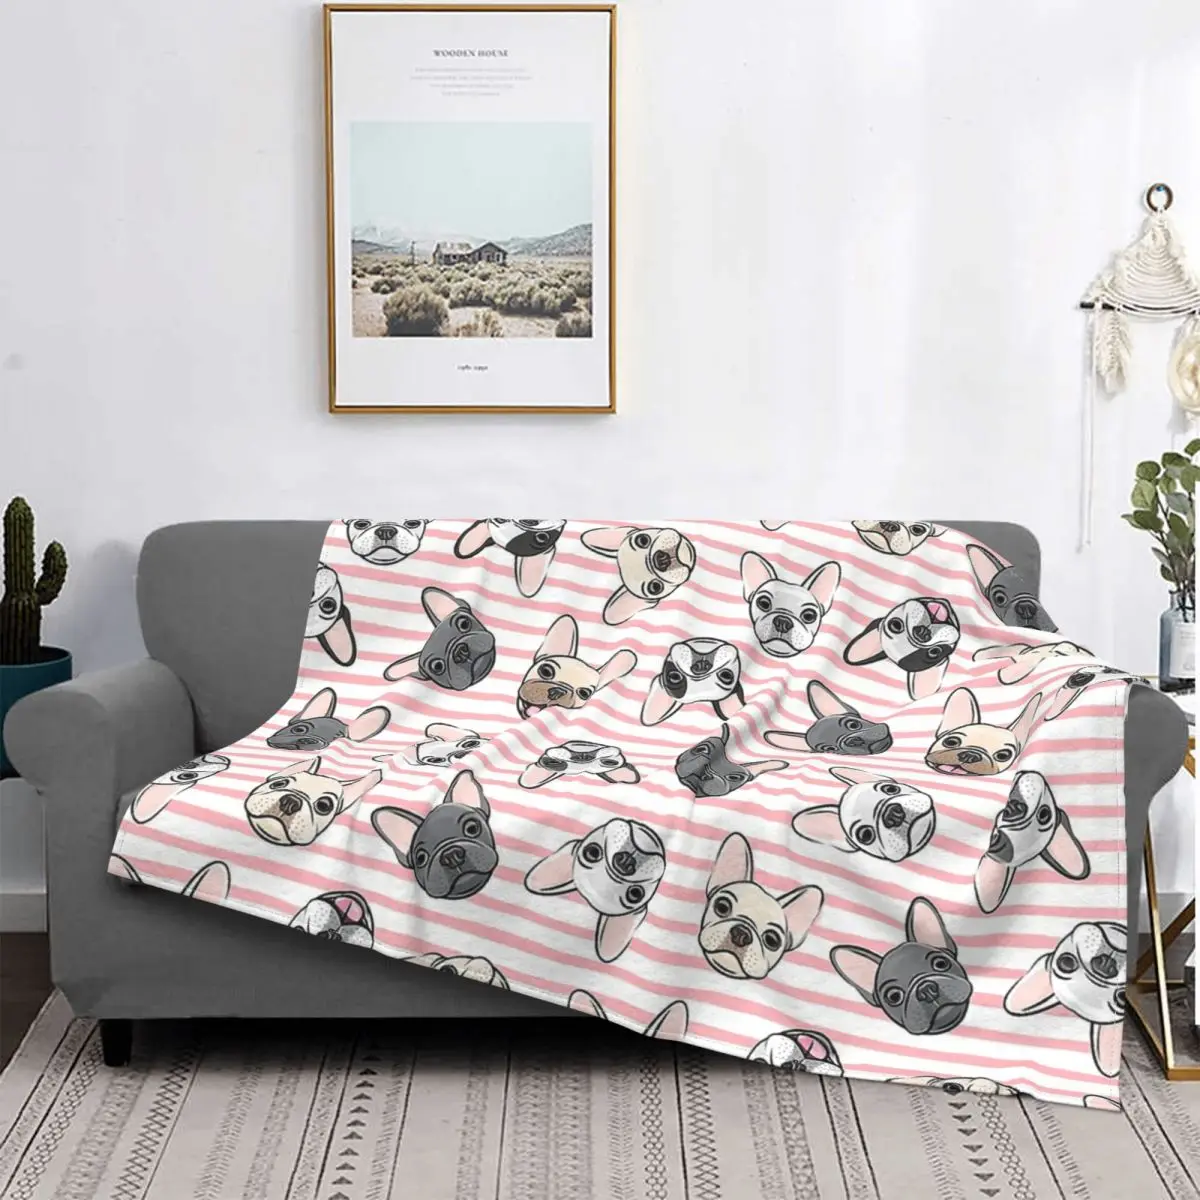 

Одеяло с французским бульдогом, фланелевое одеяло в розовую полоску, милое уютное мягкое флисовое покрывало